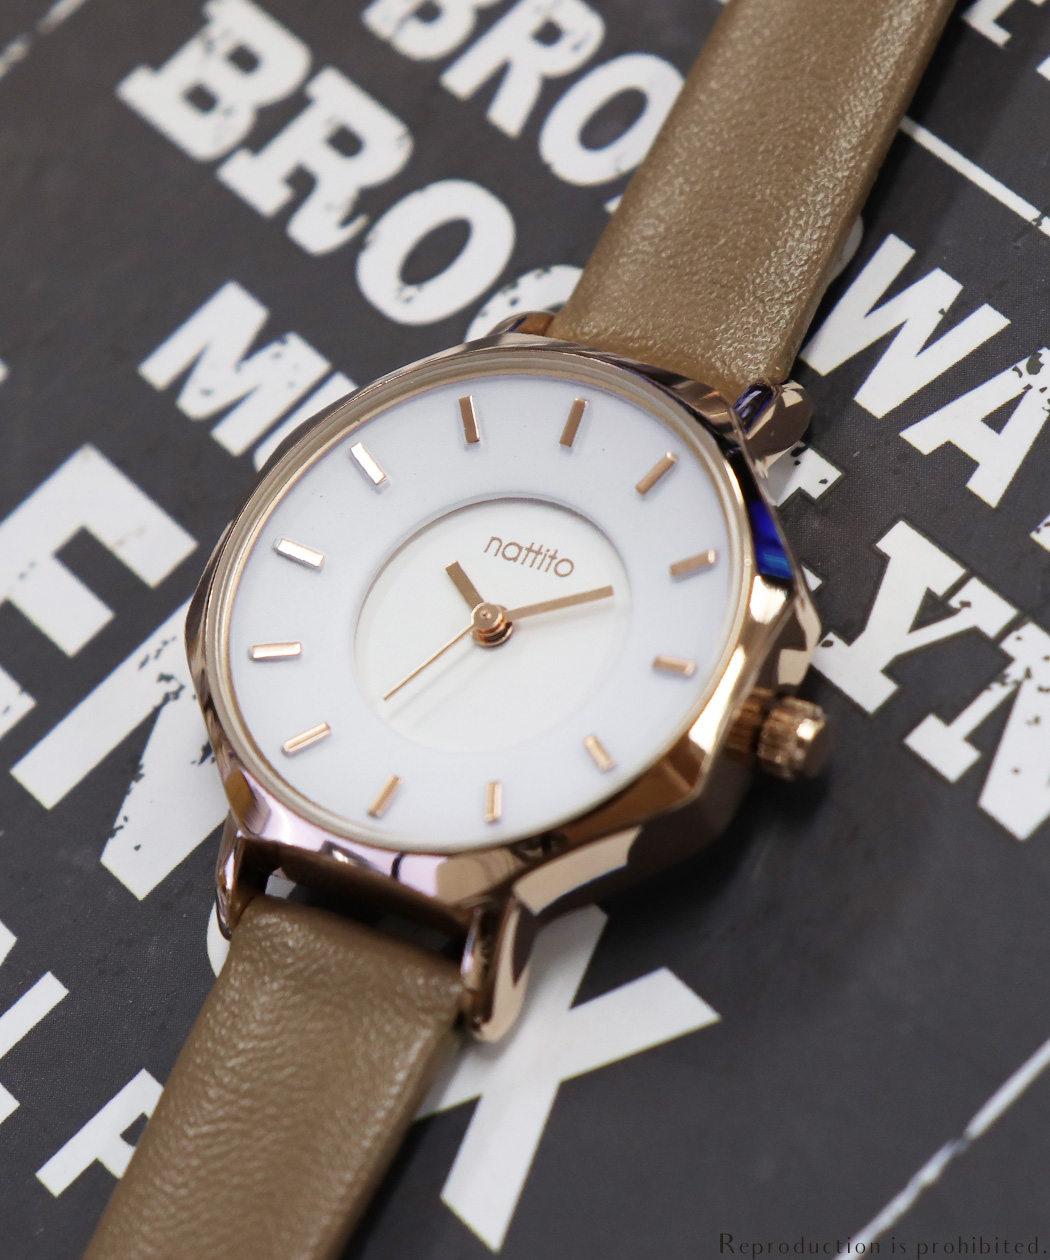 アクセサリー 腕時計レディース - 腕時計・アクセサリーの人気商品 